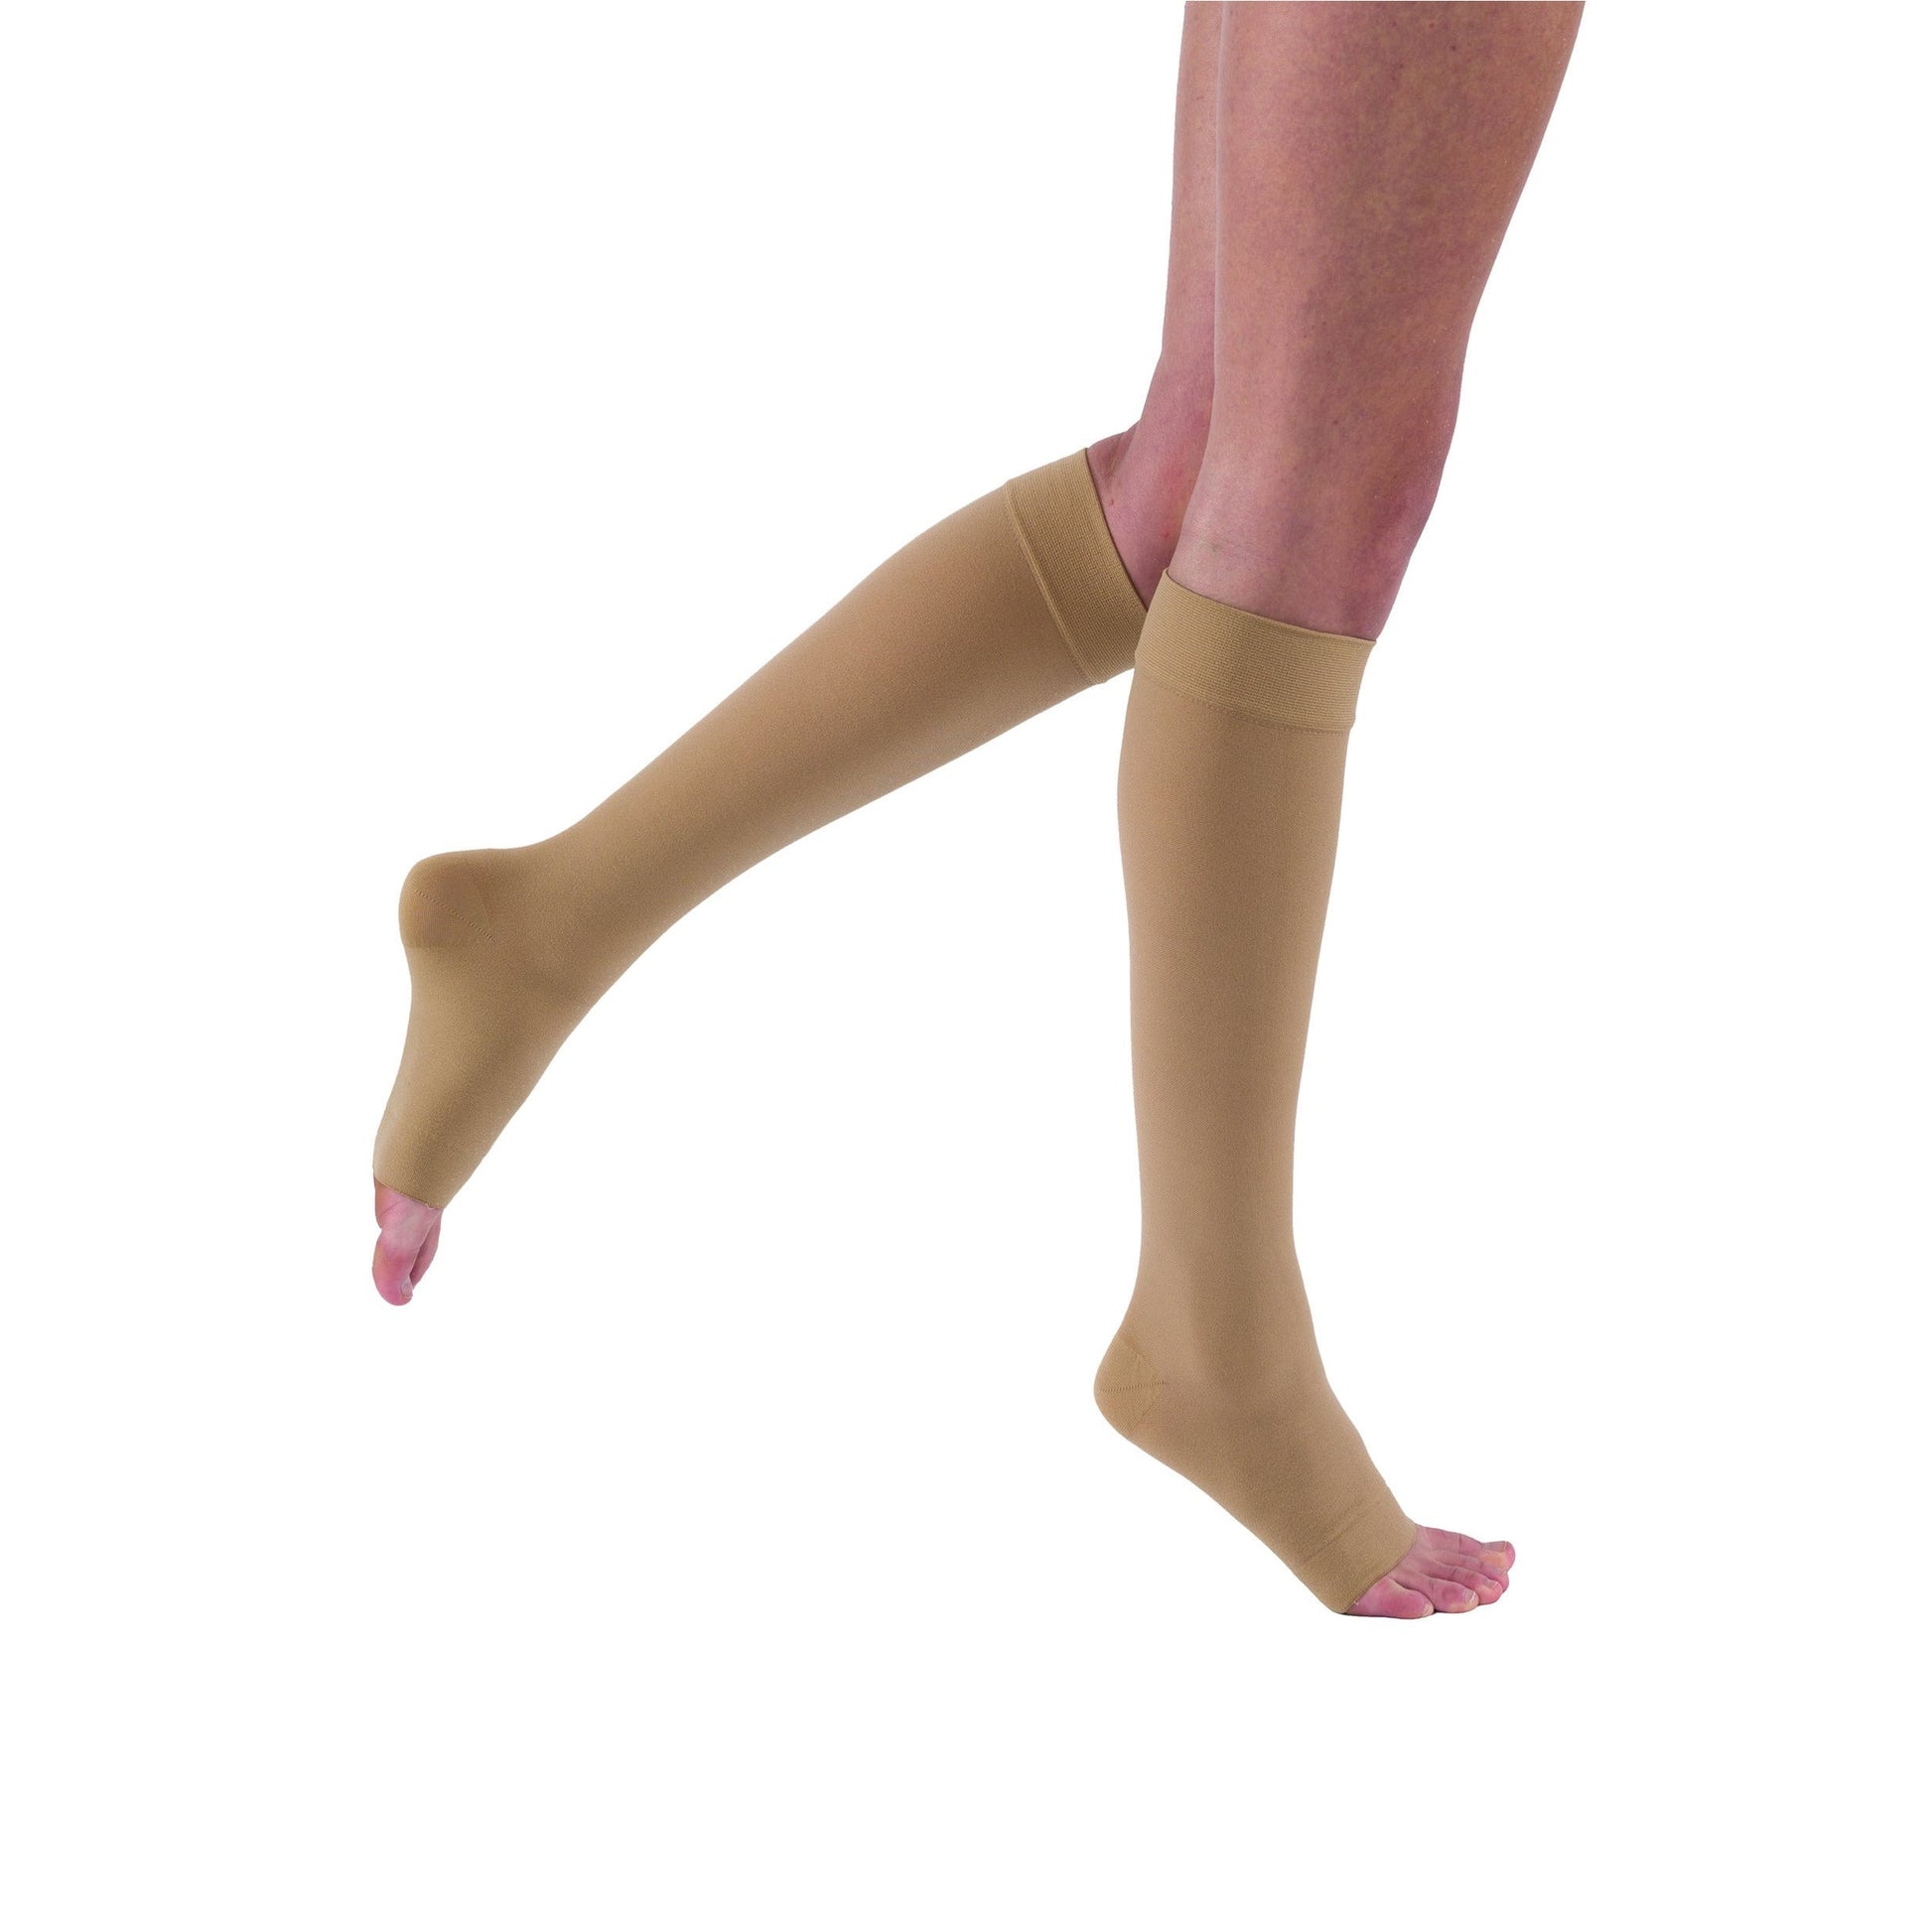 Truform Women's Stockings, Knee High, Sheer: 30-40 mmHg, Black, X-Large 